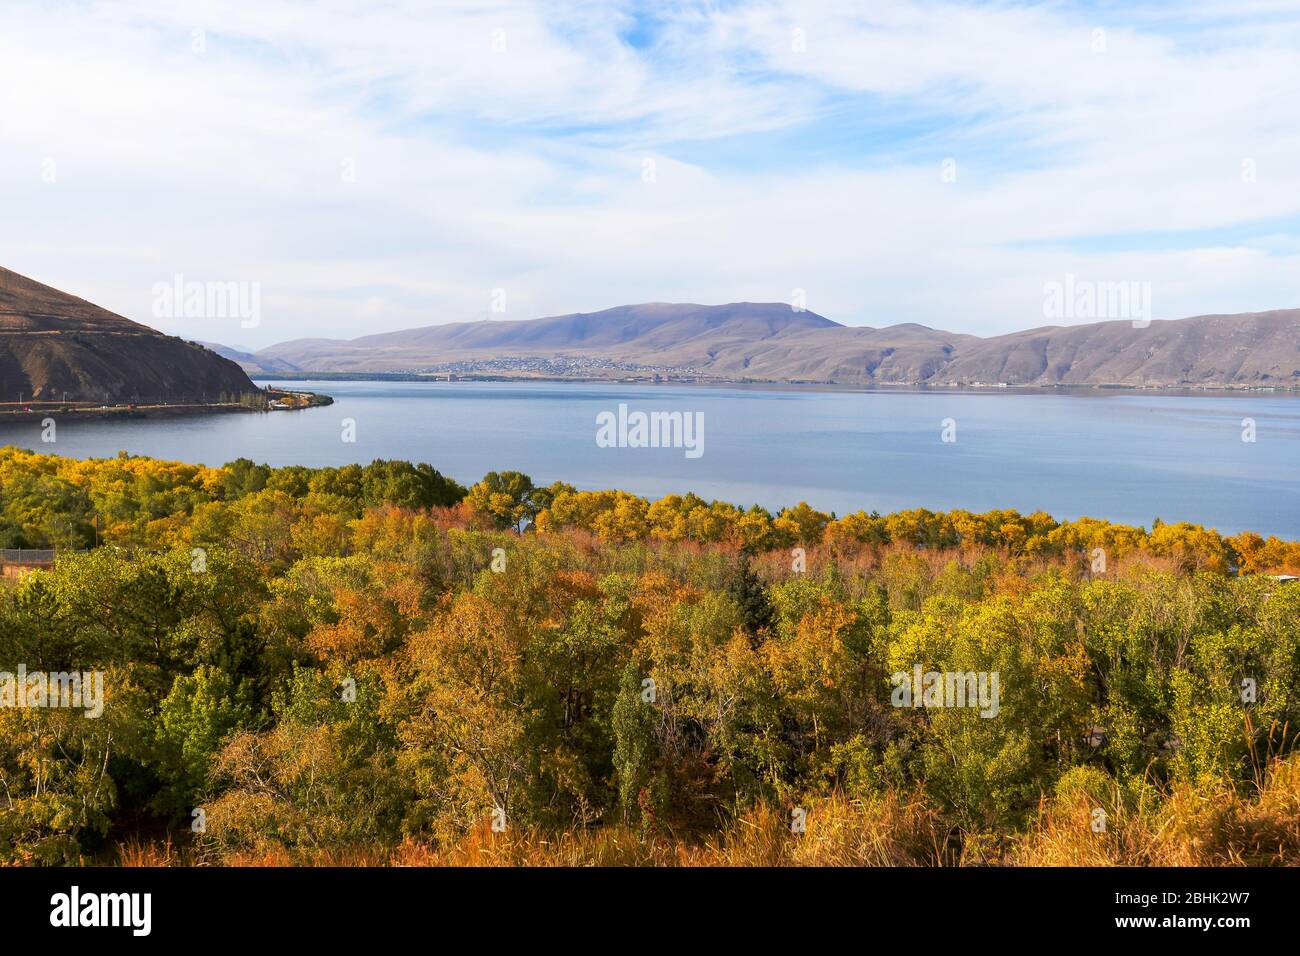 Sevan See in Armenien mit schönen Bäumen in Herbstfarben. Alpensee mit Bergen im Kaukasus. Beliebtes armenisches Reiseziel. Stockfoto